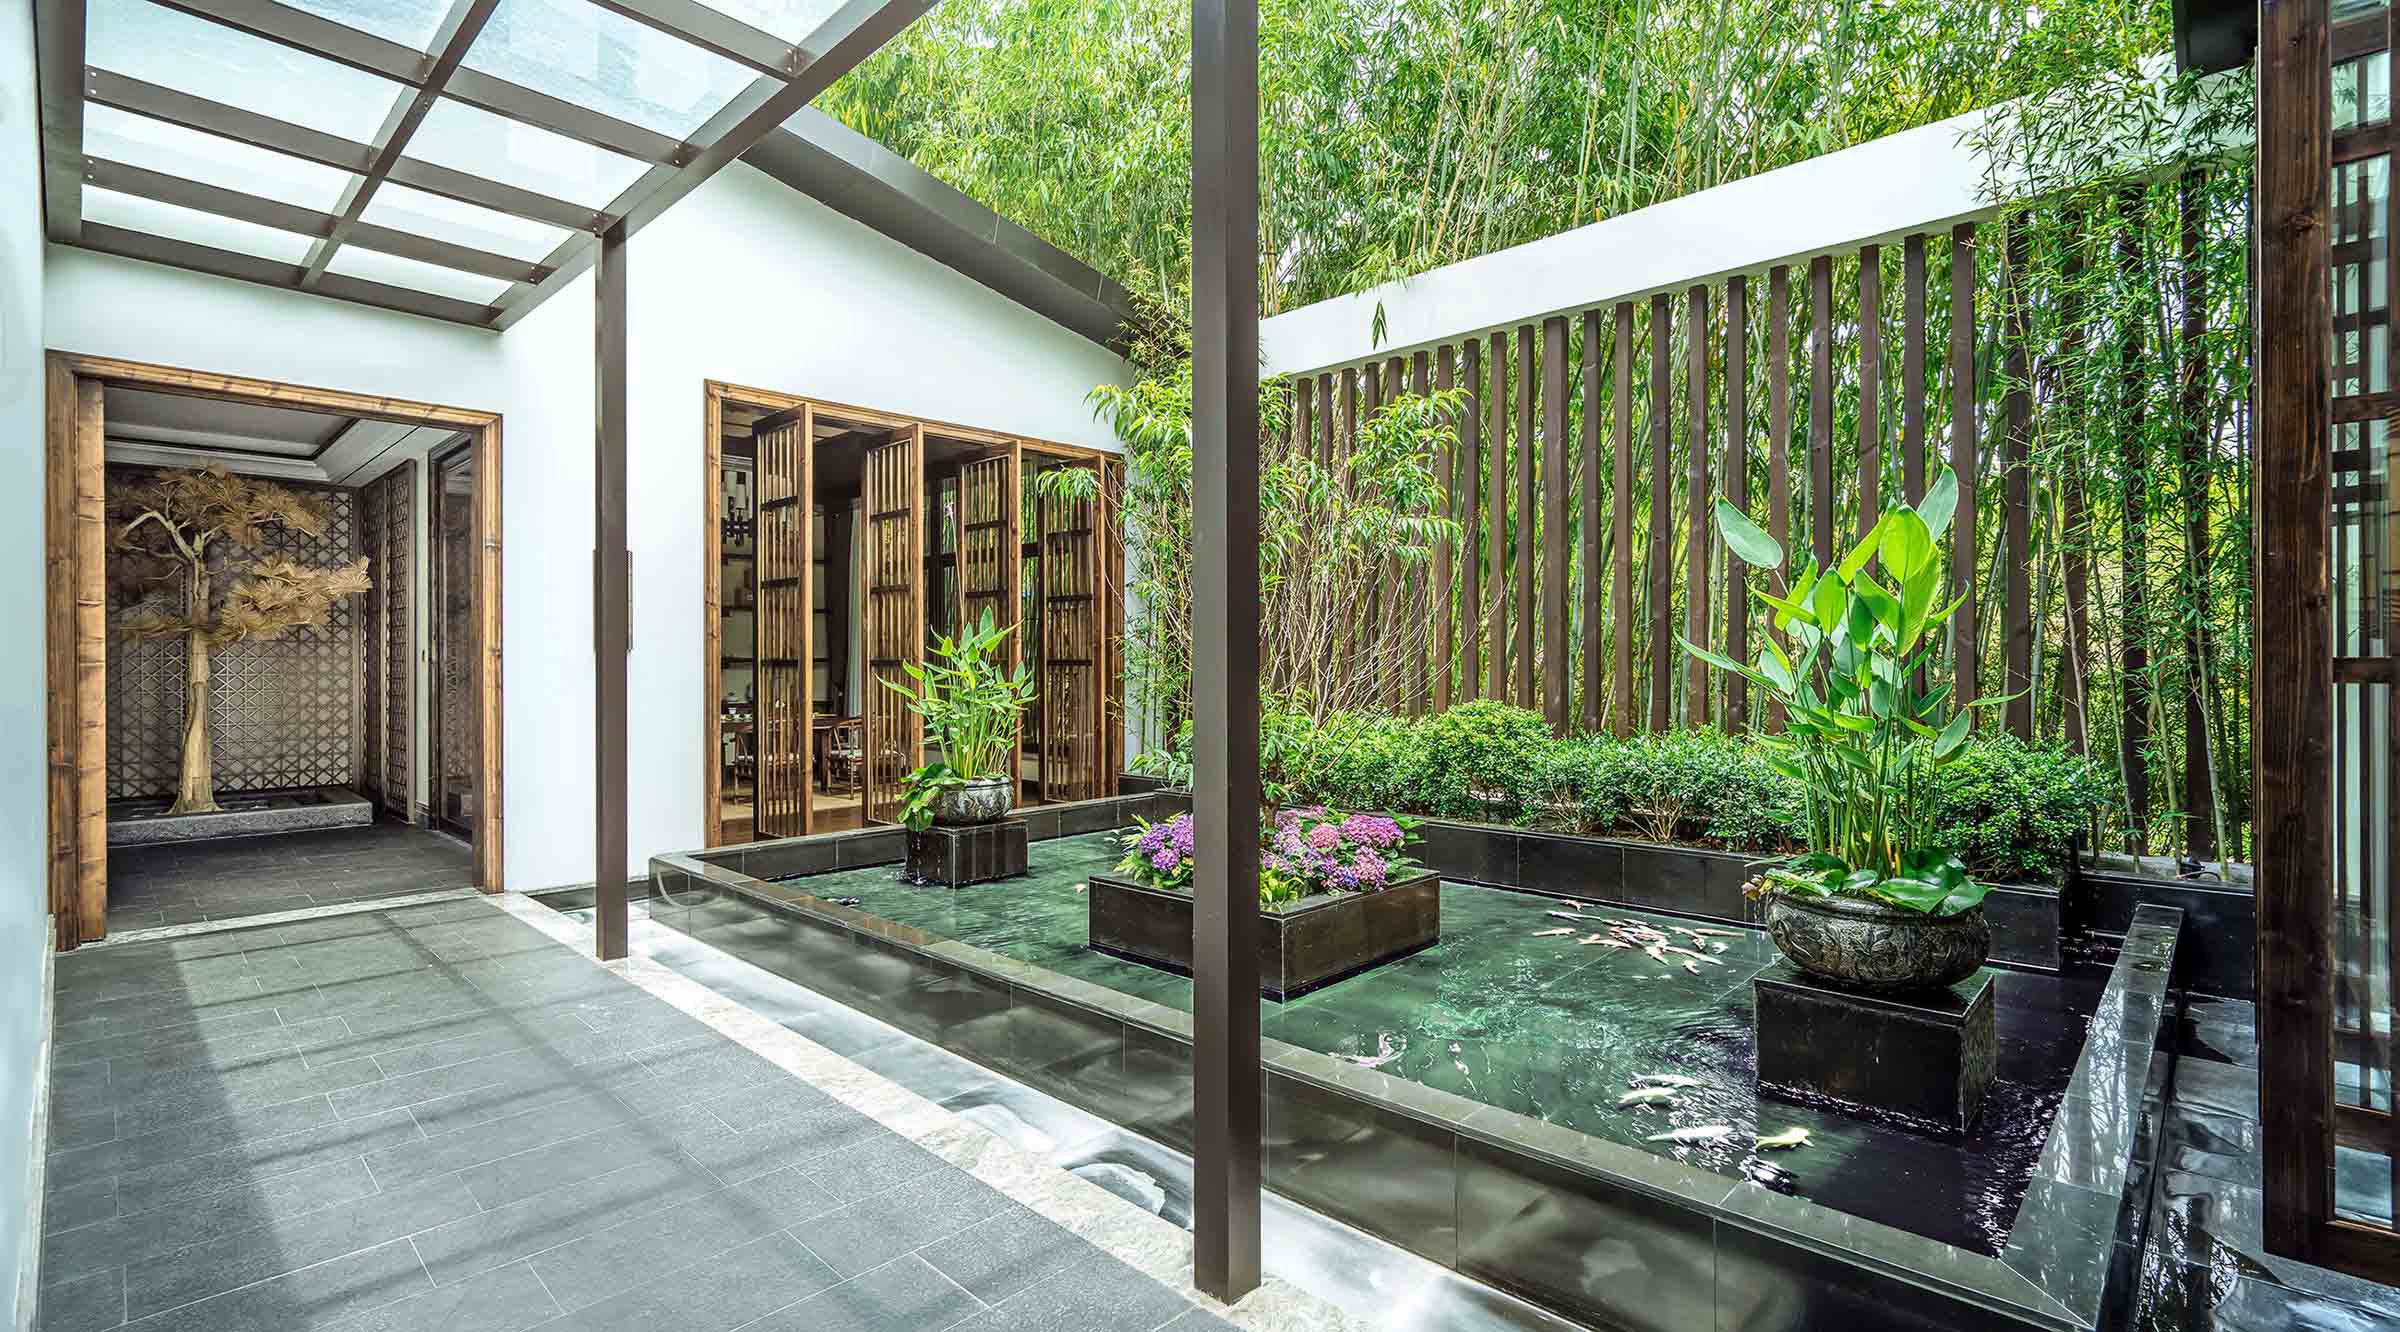 Interior design scheme by Tsingda Environment Art (Shenzhen) Design Consultants Co. for Shenzhen Nord Club